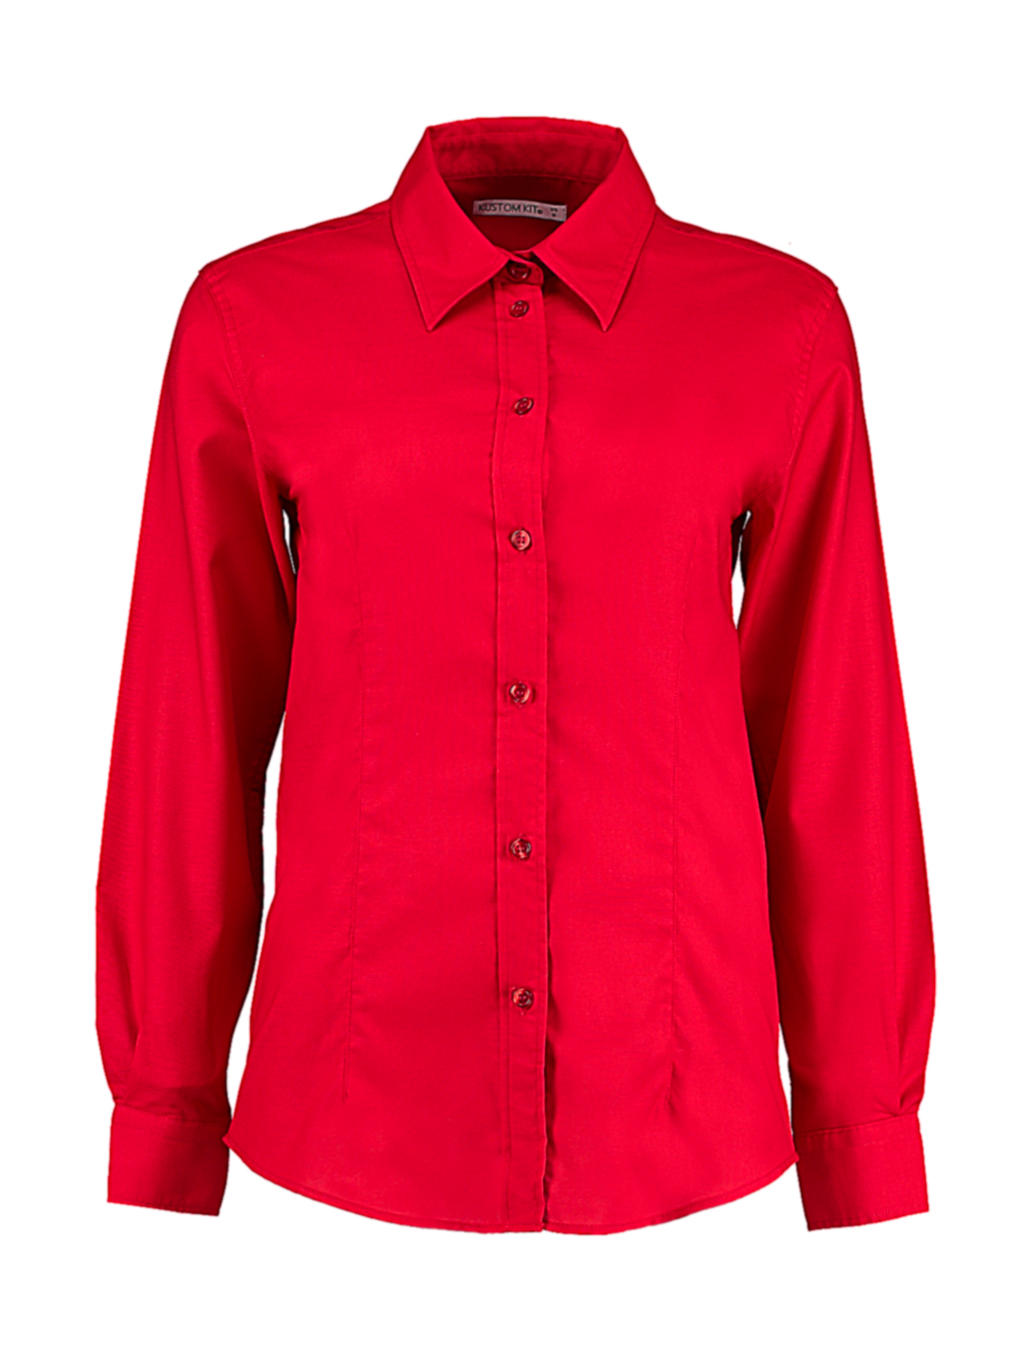 Blúzka Workwear Oxford s dlhými rukávmi - red